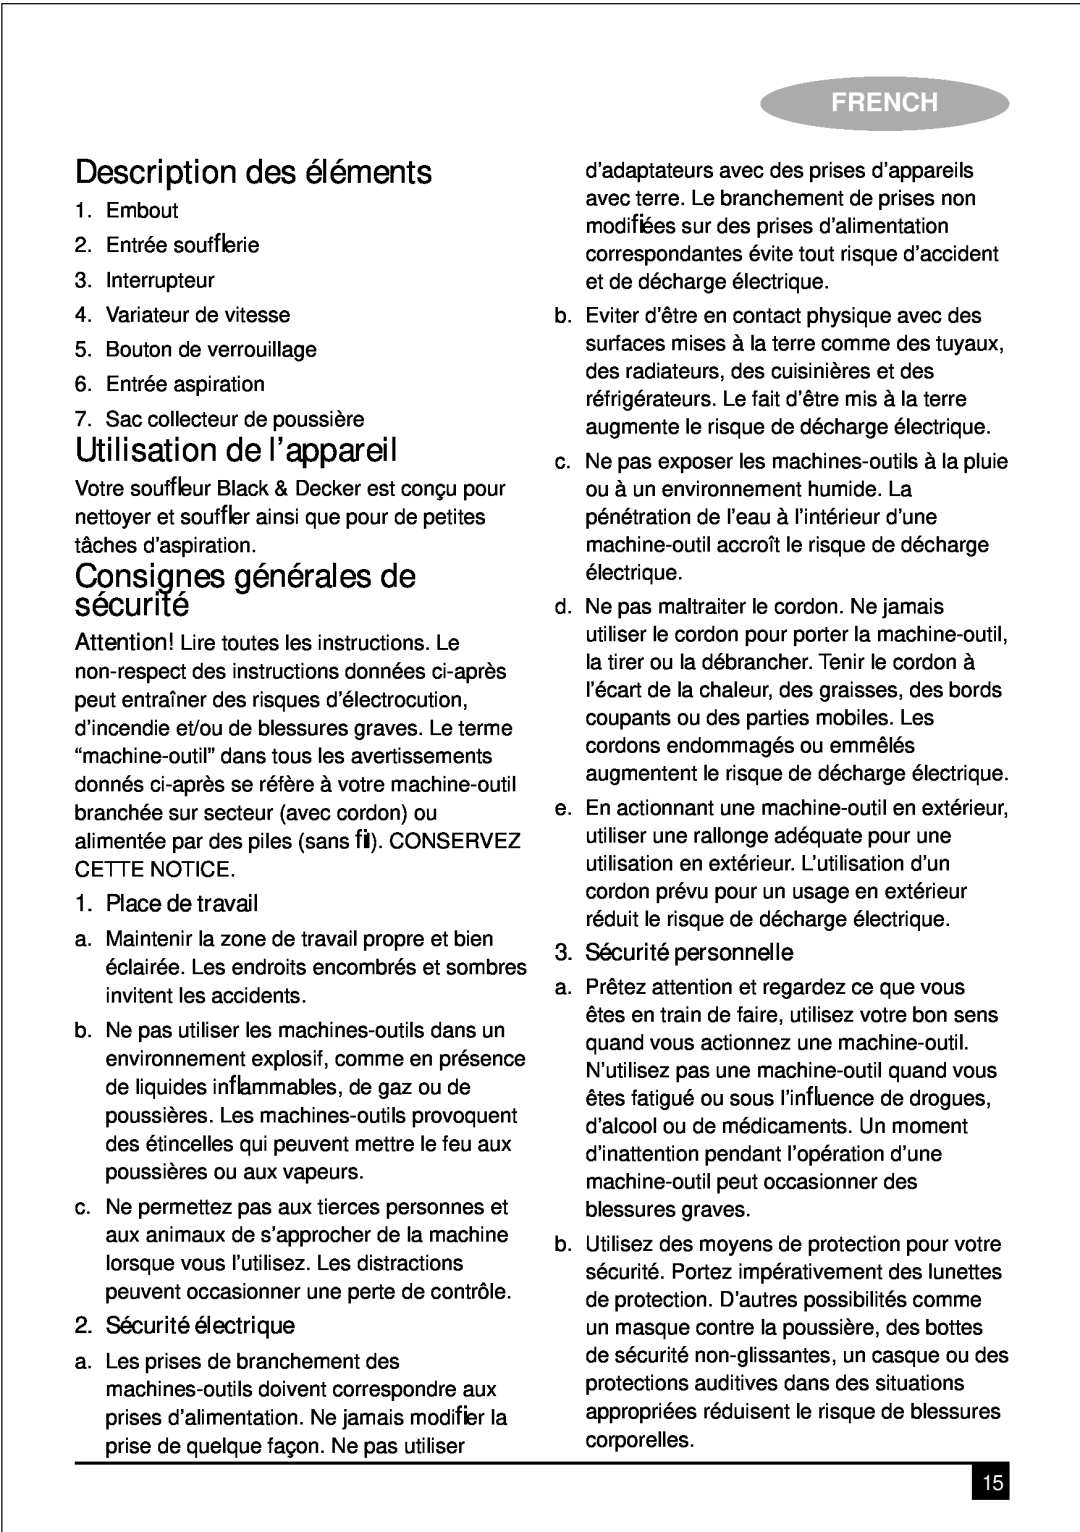 Black & Decker KTX5000 manual Description des éléments, Utilisation de l’appareil, Consignes générales de sécurité, French 